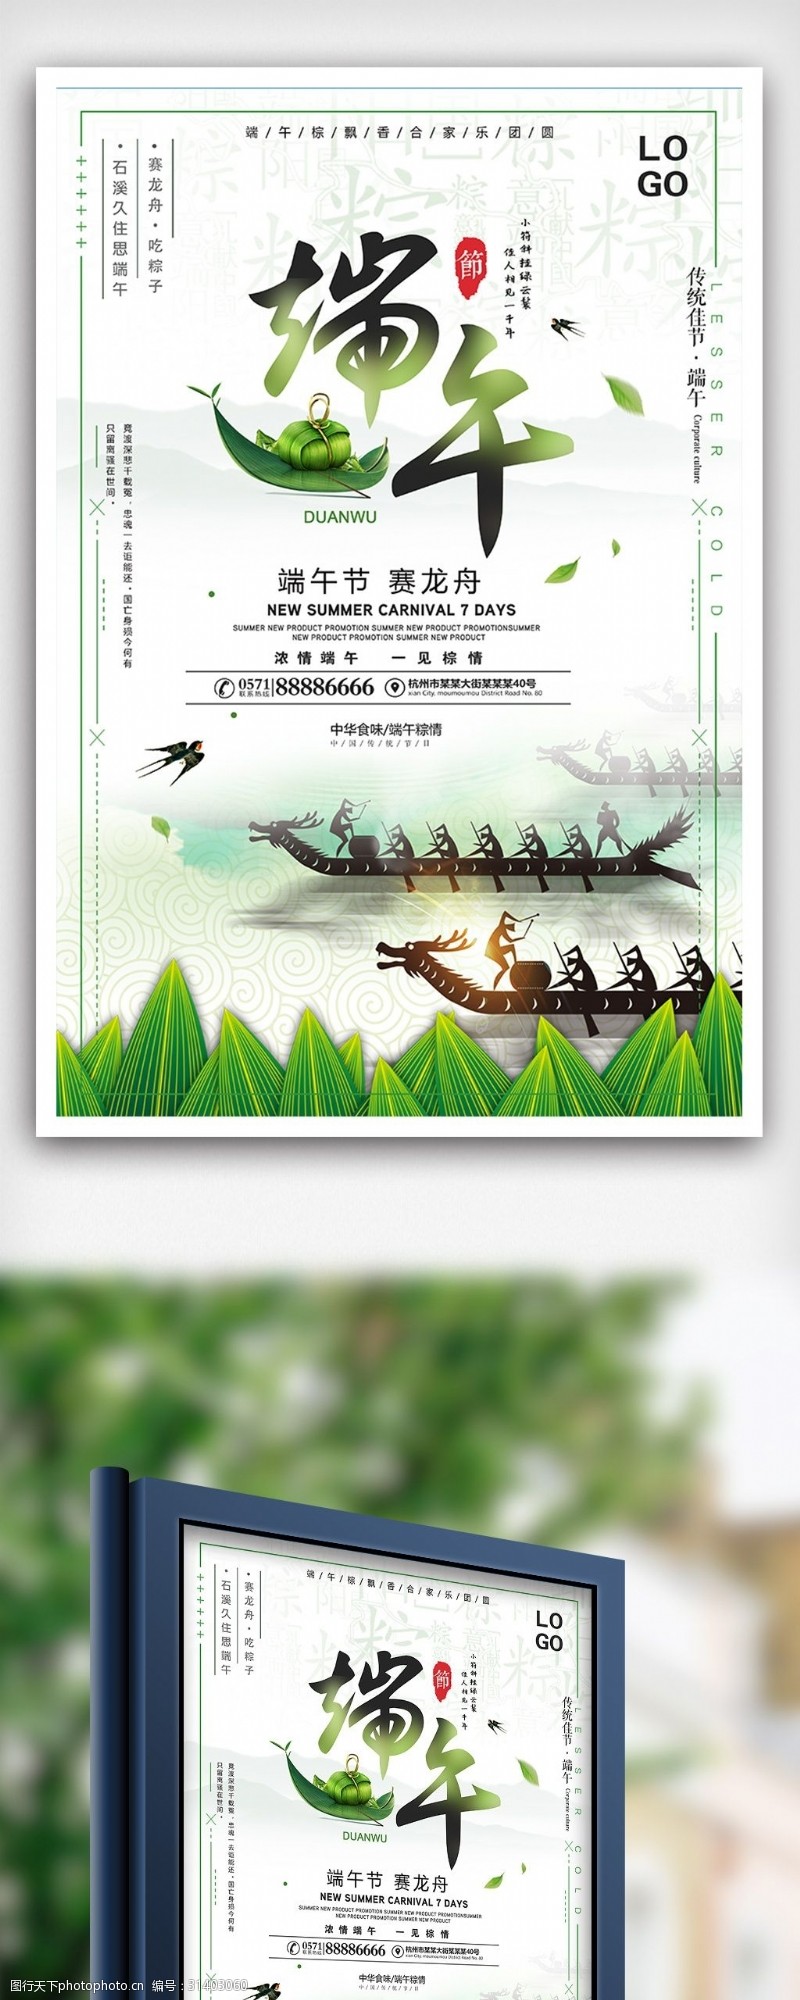 端午模板下载24节气端午节赛龙舟节日海报